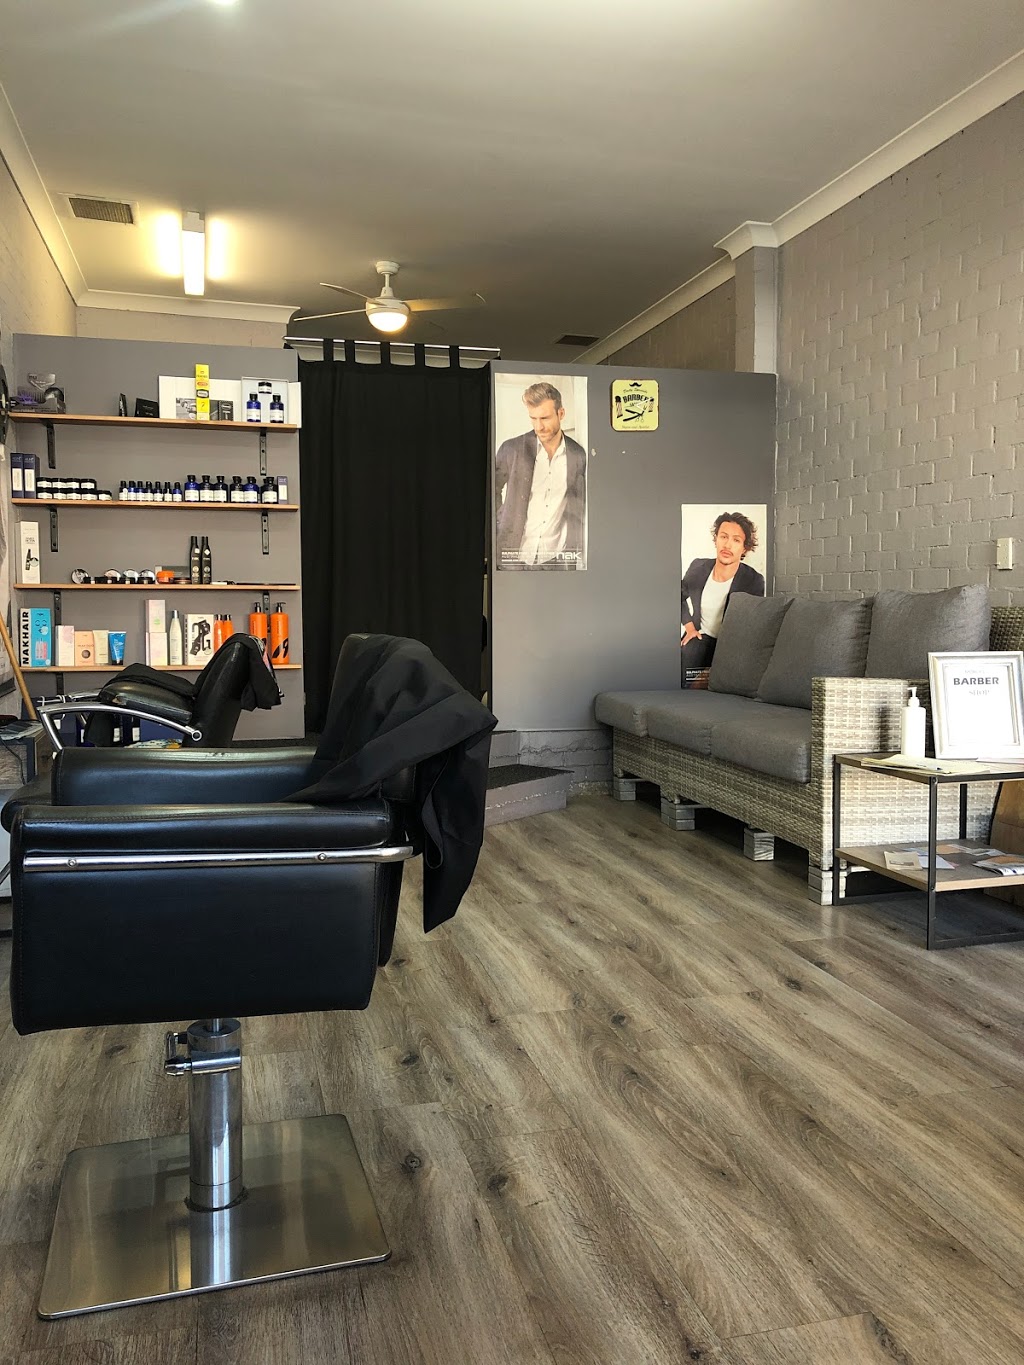 Moruya Barber Shop | Moruya NSW 2537, Australia